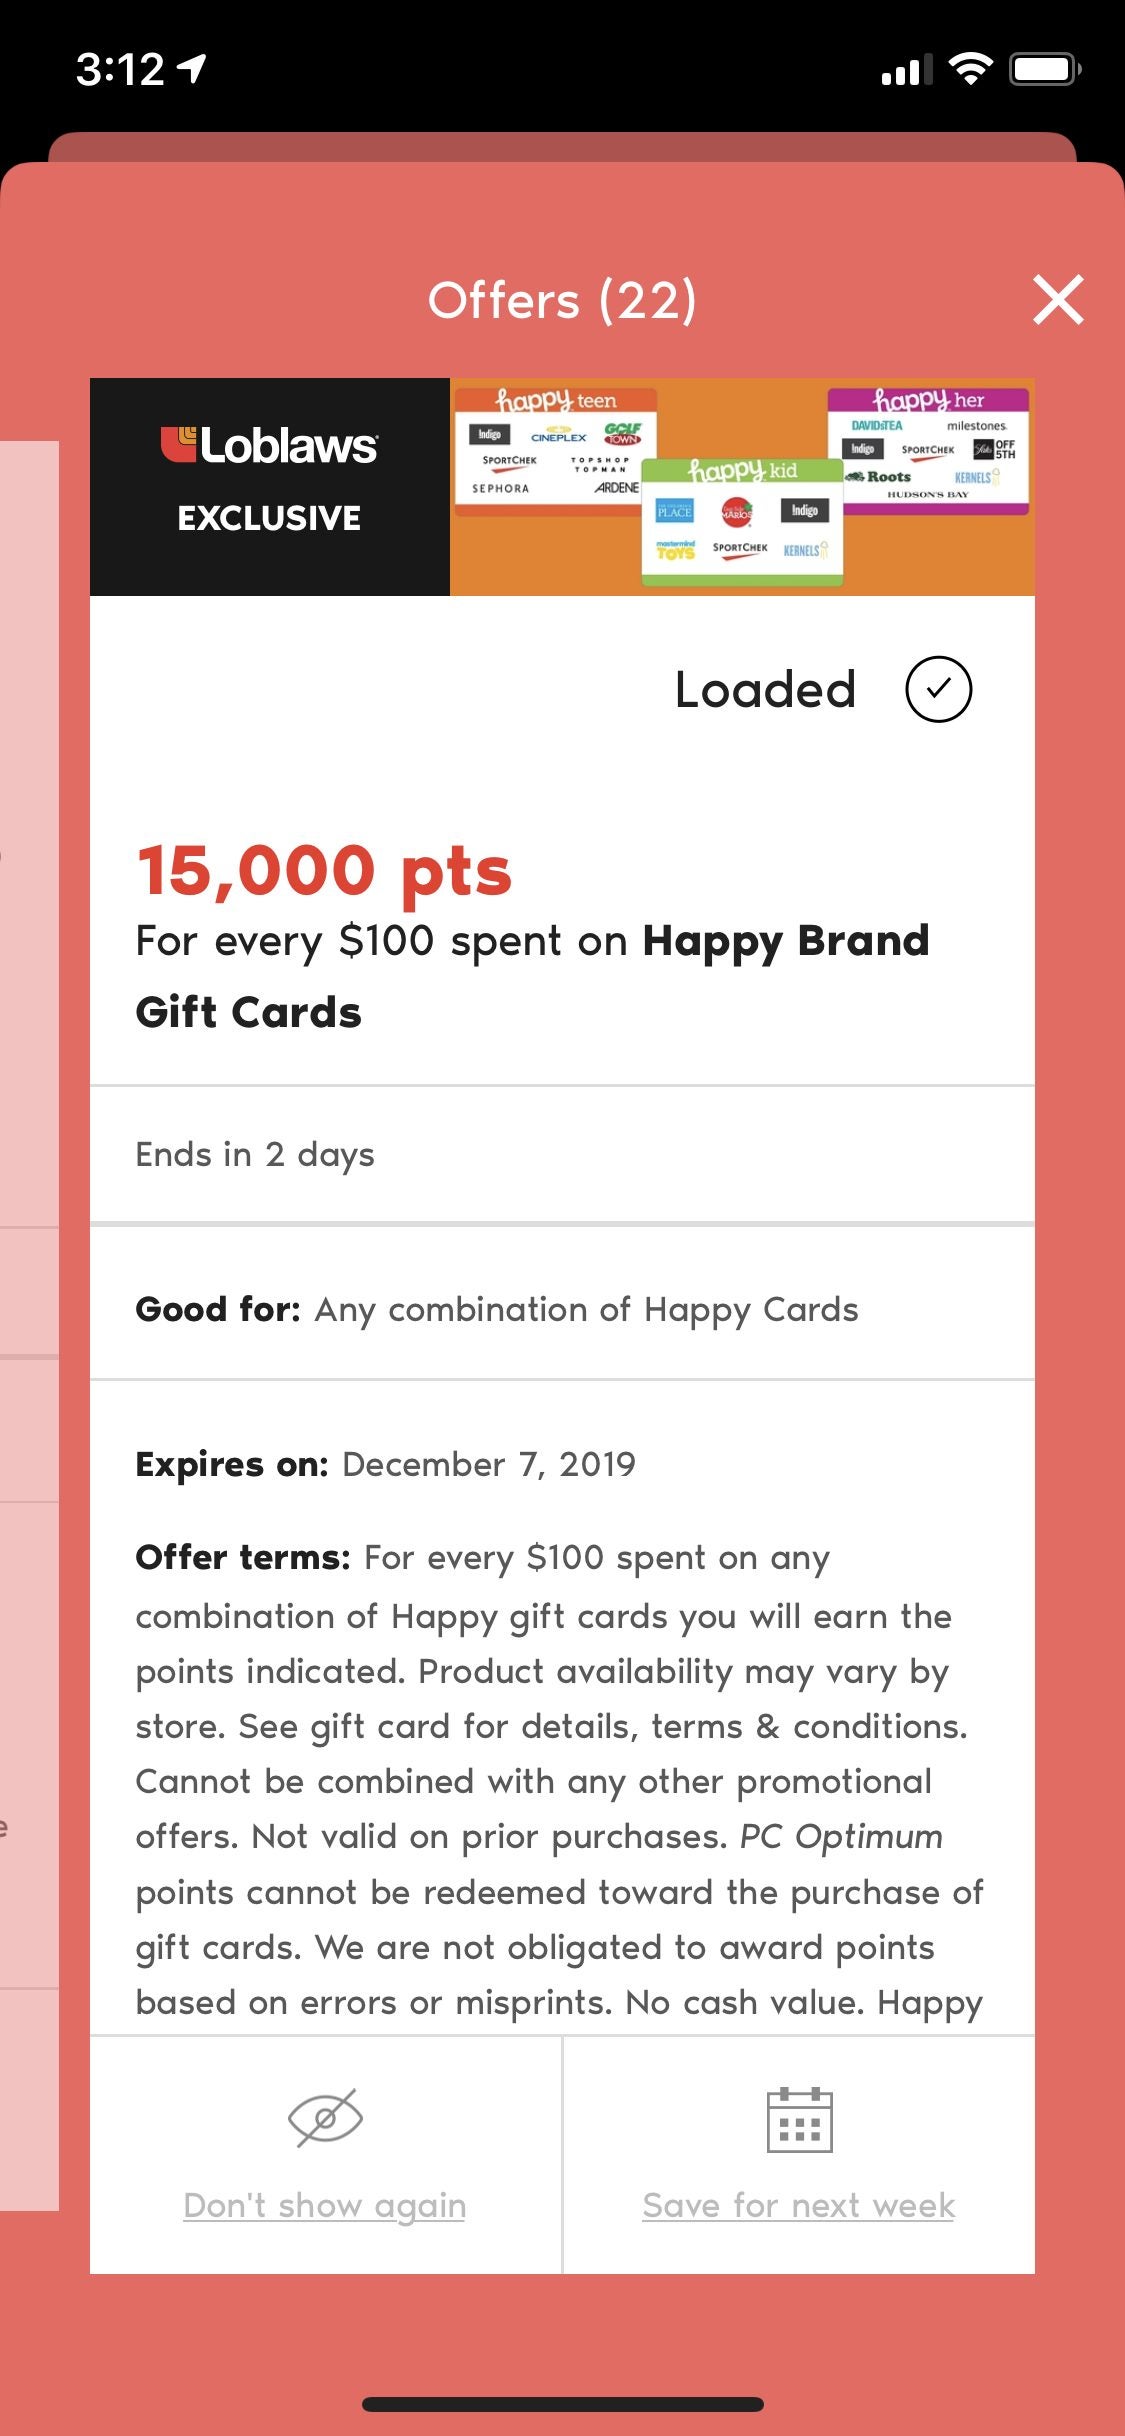 Hypadão de Ofertas: gift cards com até 15% de desconto - Blog do Hype